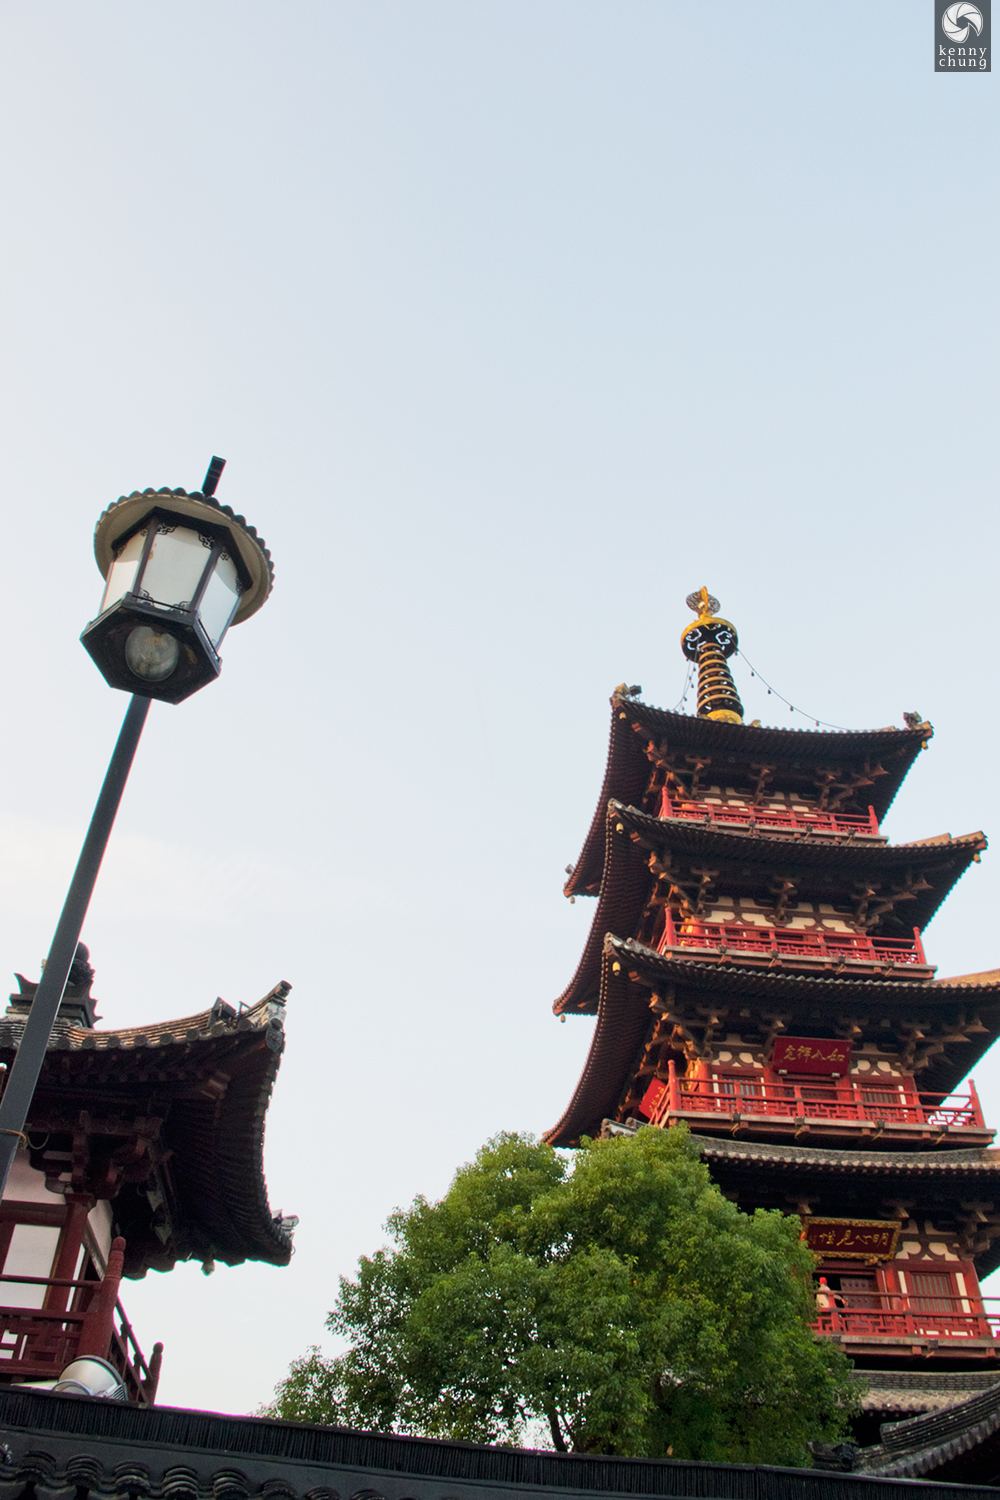 Hashan Buddhist Temple in Suzhou